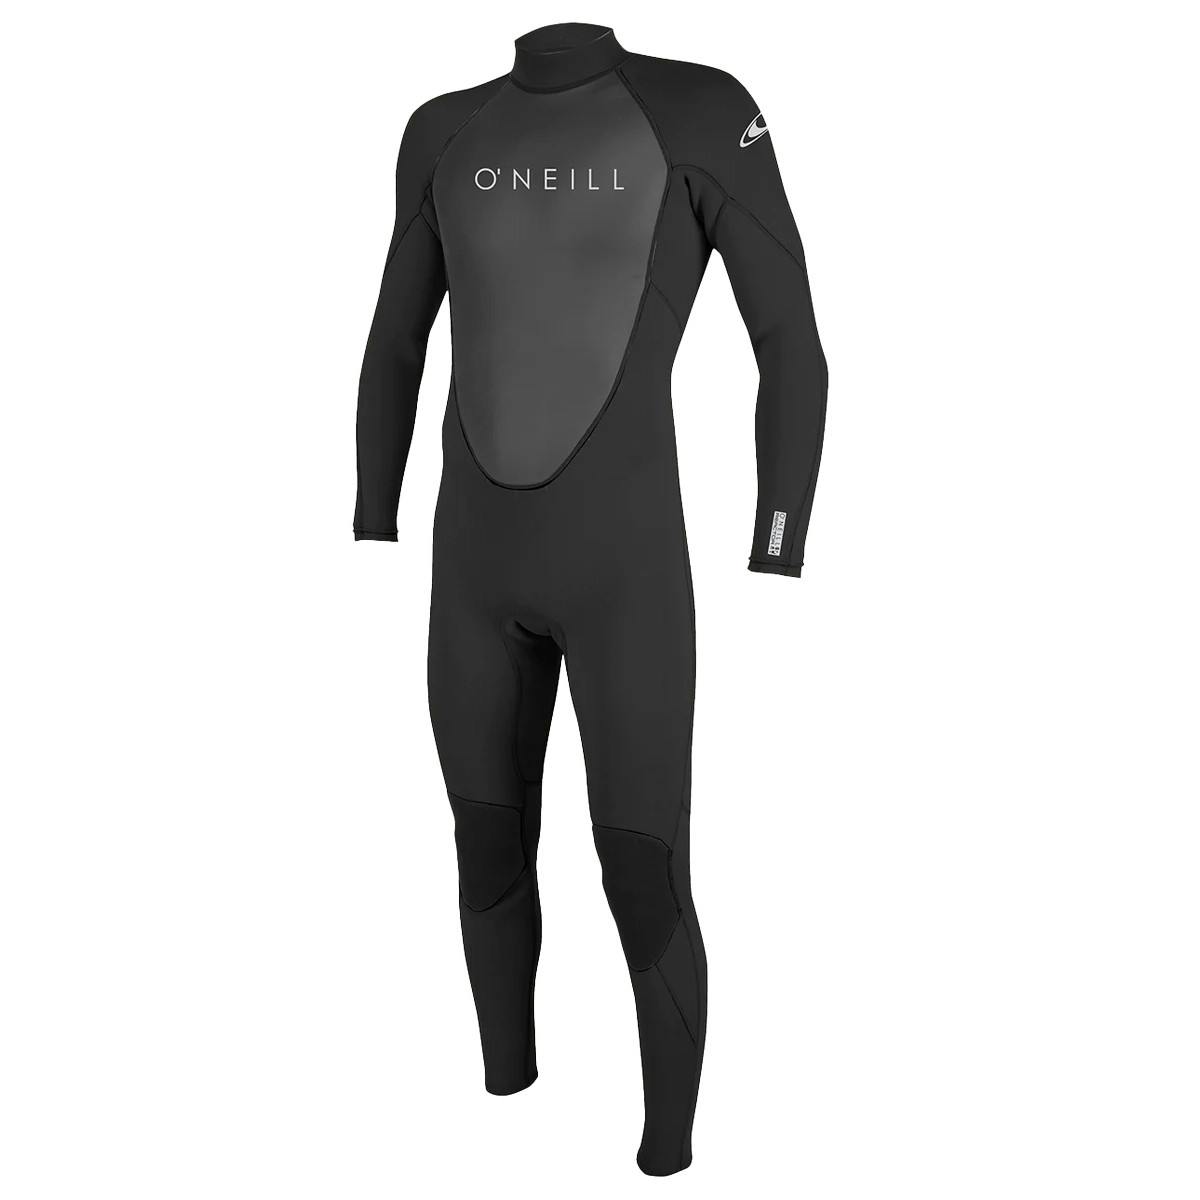 O’Neill Reactor-2 3/2 mm Back Zip Full Wetsuit (Men's) - Black/Black